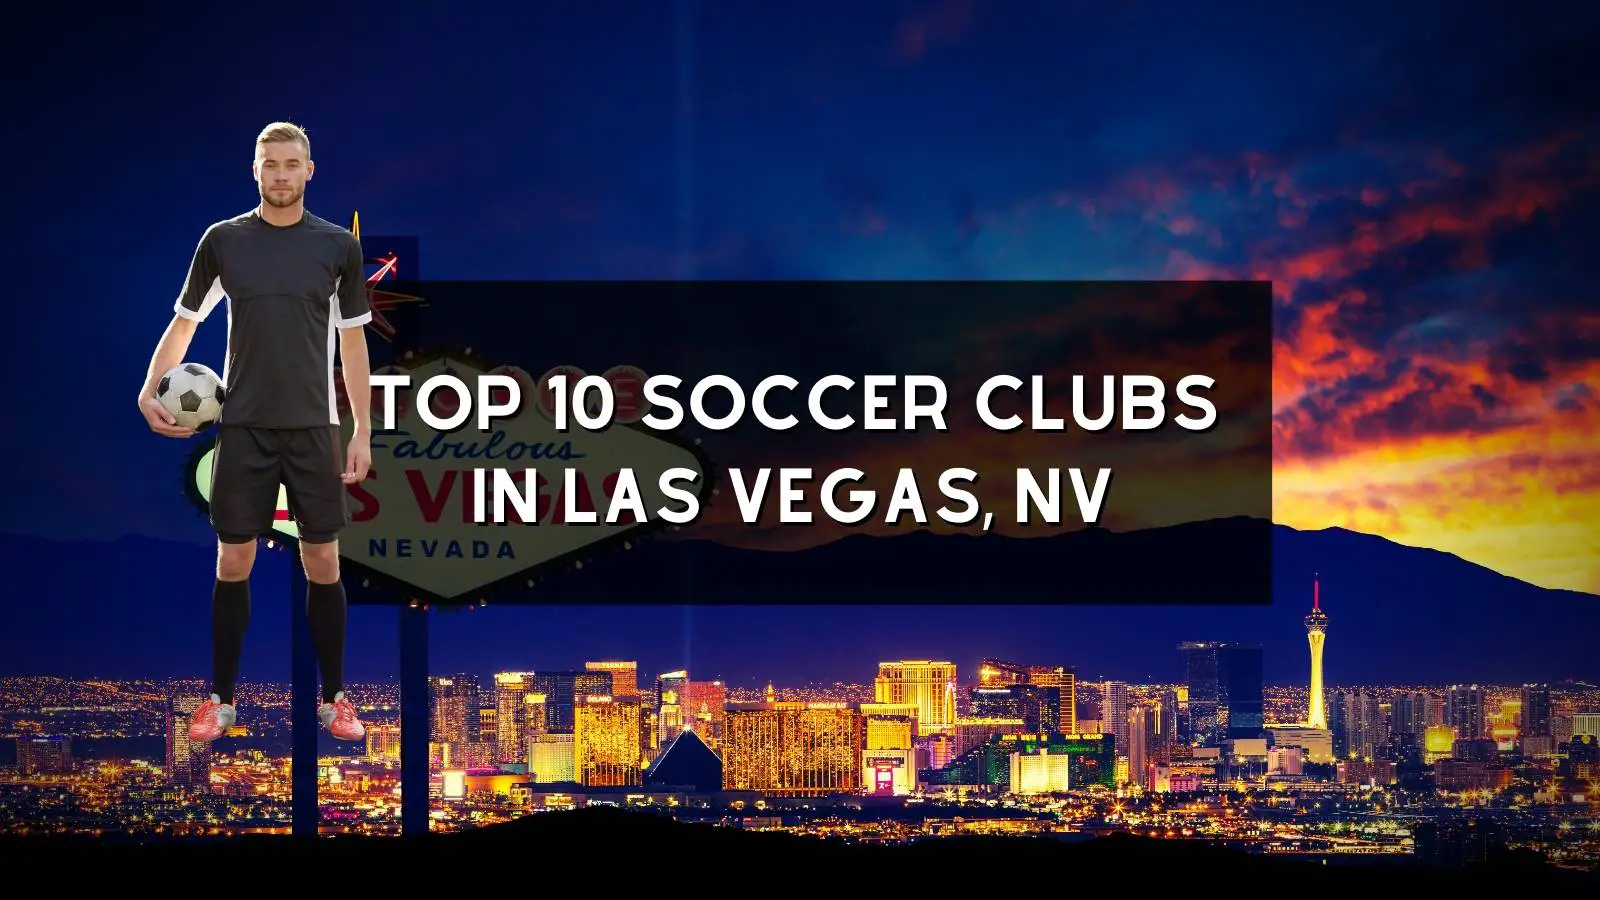 Top 10 Soccer Clubs in Las Vegas